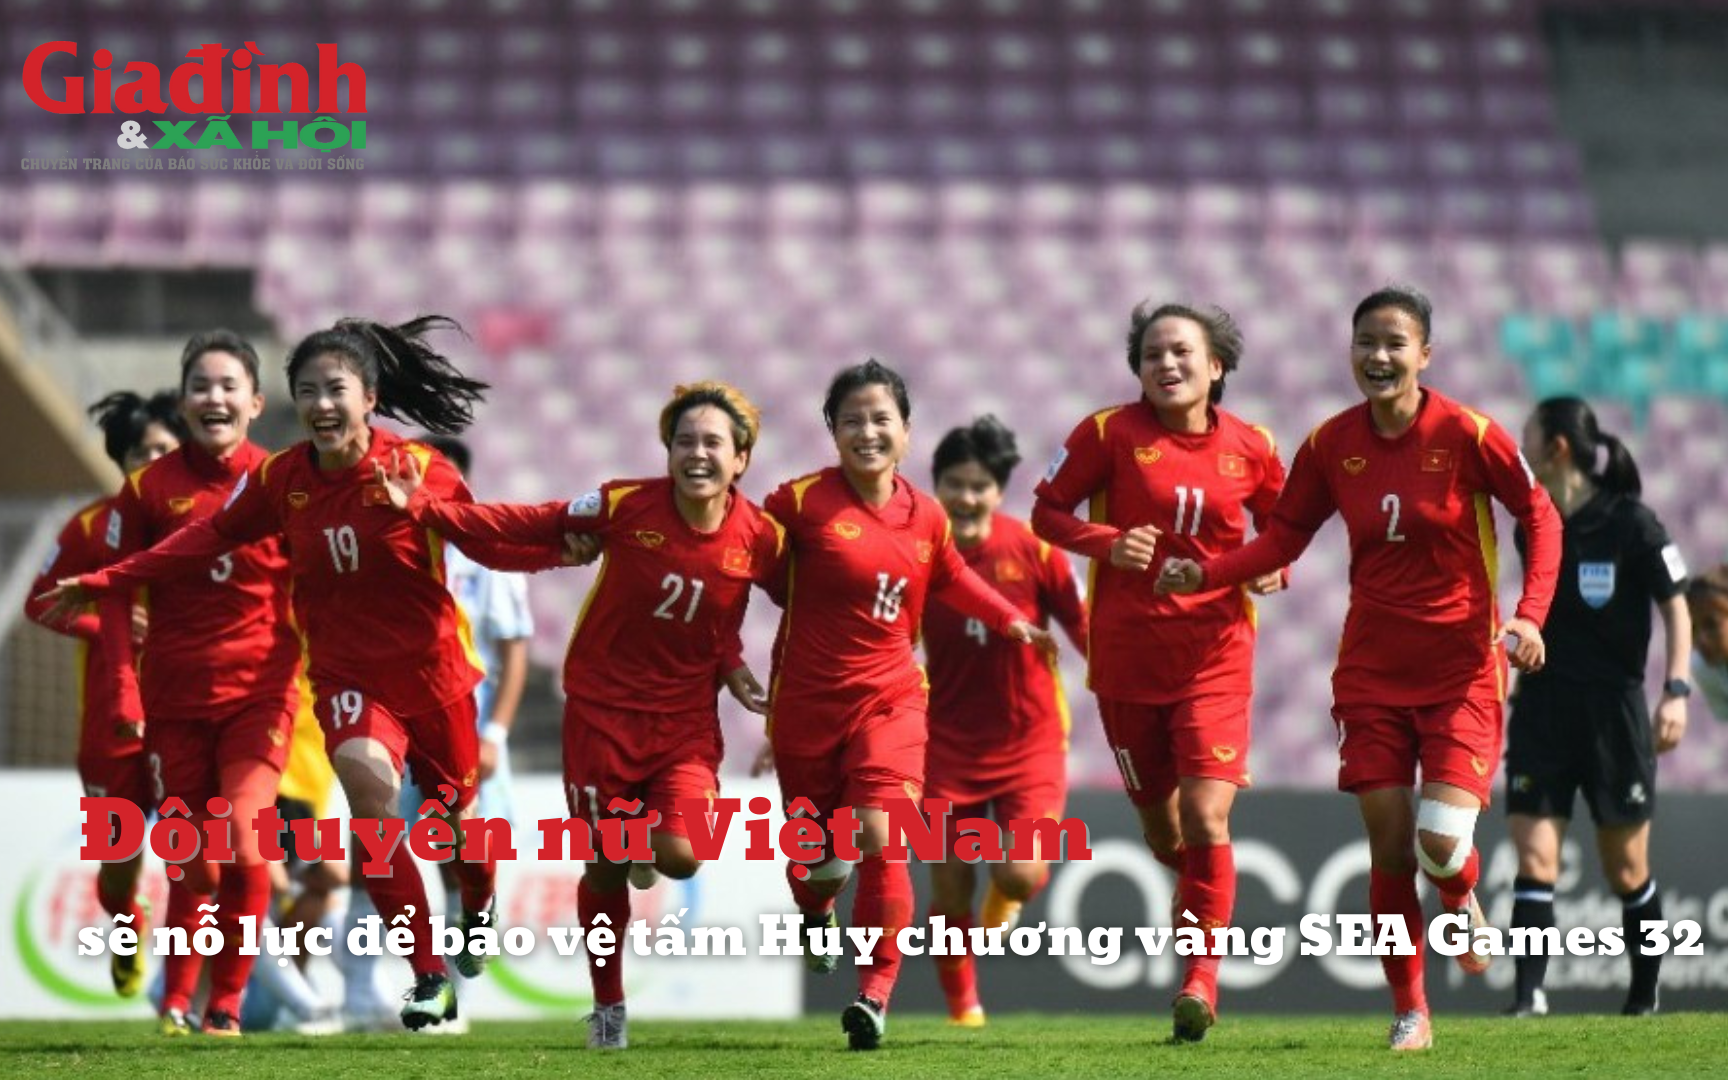 Đội tuyển nữ Việt Nam sẽ nỗ lực để bảo vệ tấm Huy chương vàng SEA Games 32